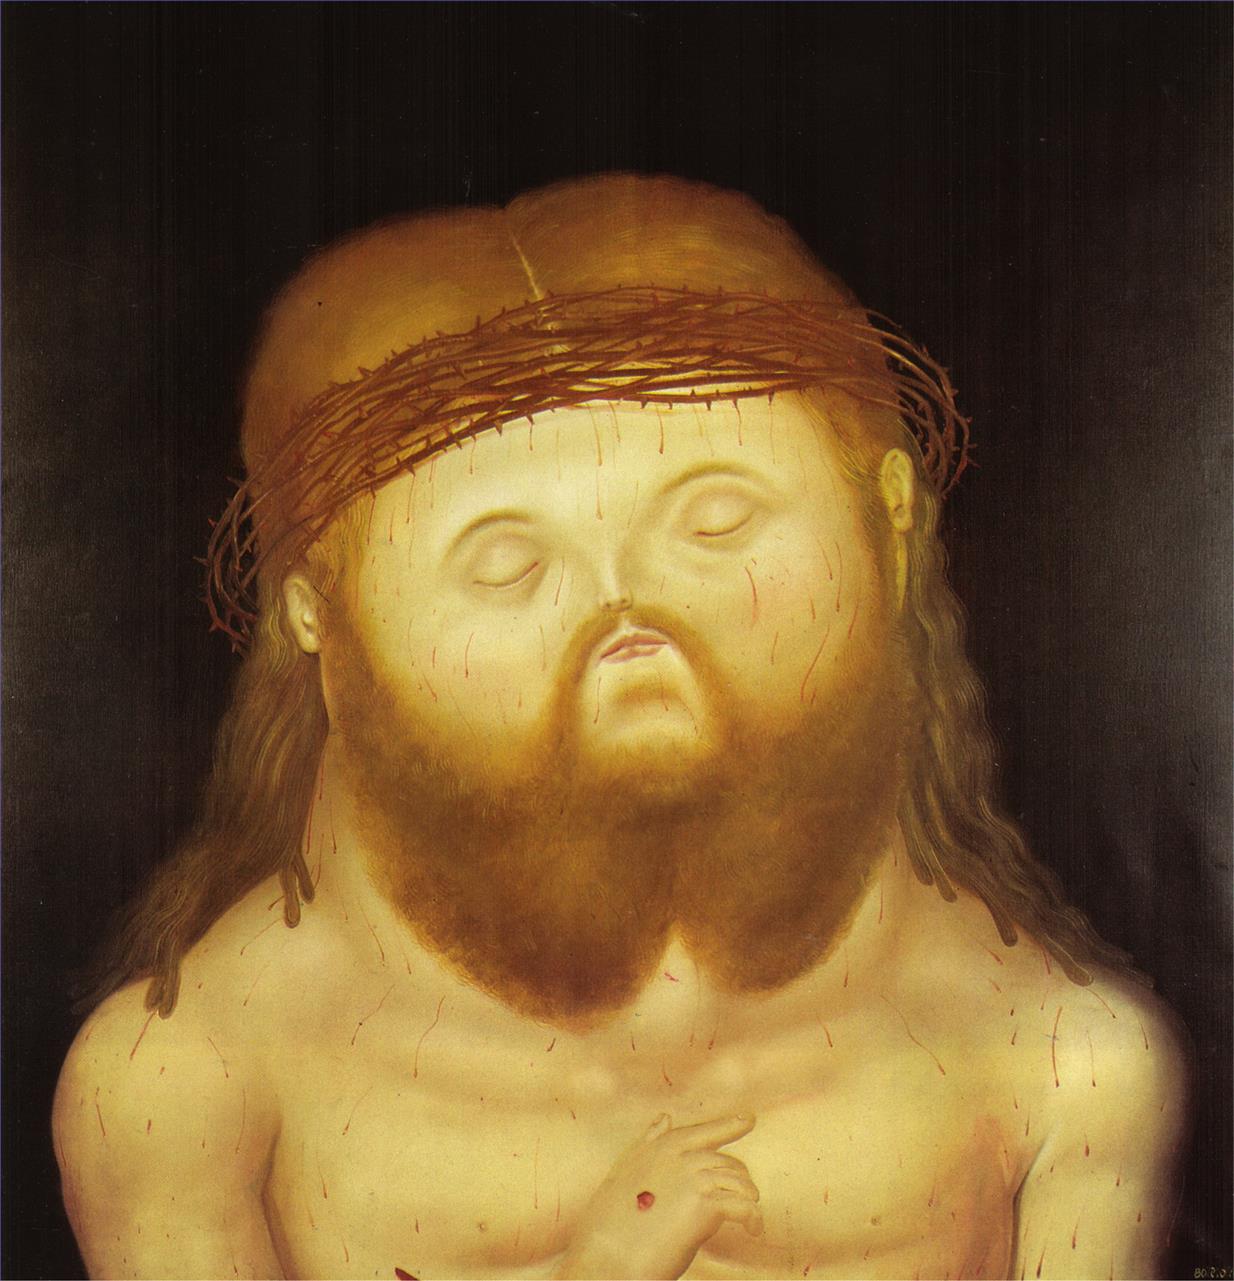 Kopf von Christus Fernando Botero Ölgemälde